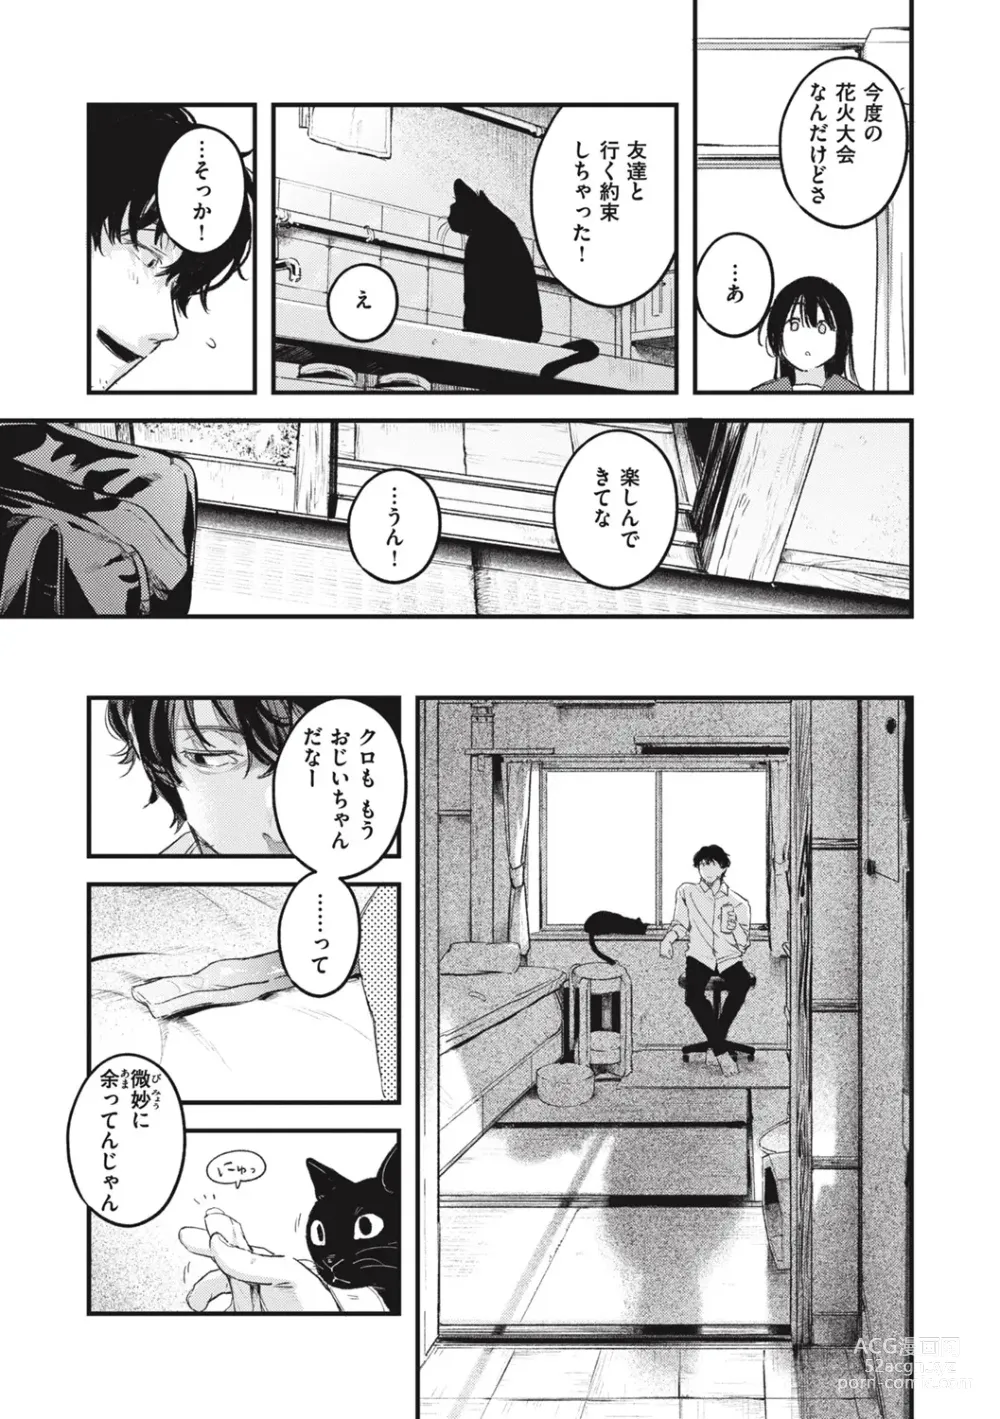 Page 13 of manga Koi no Mukidashi